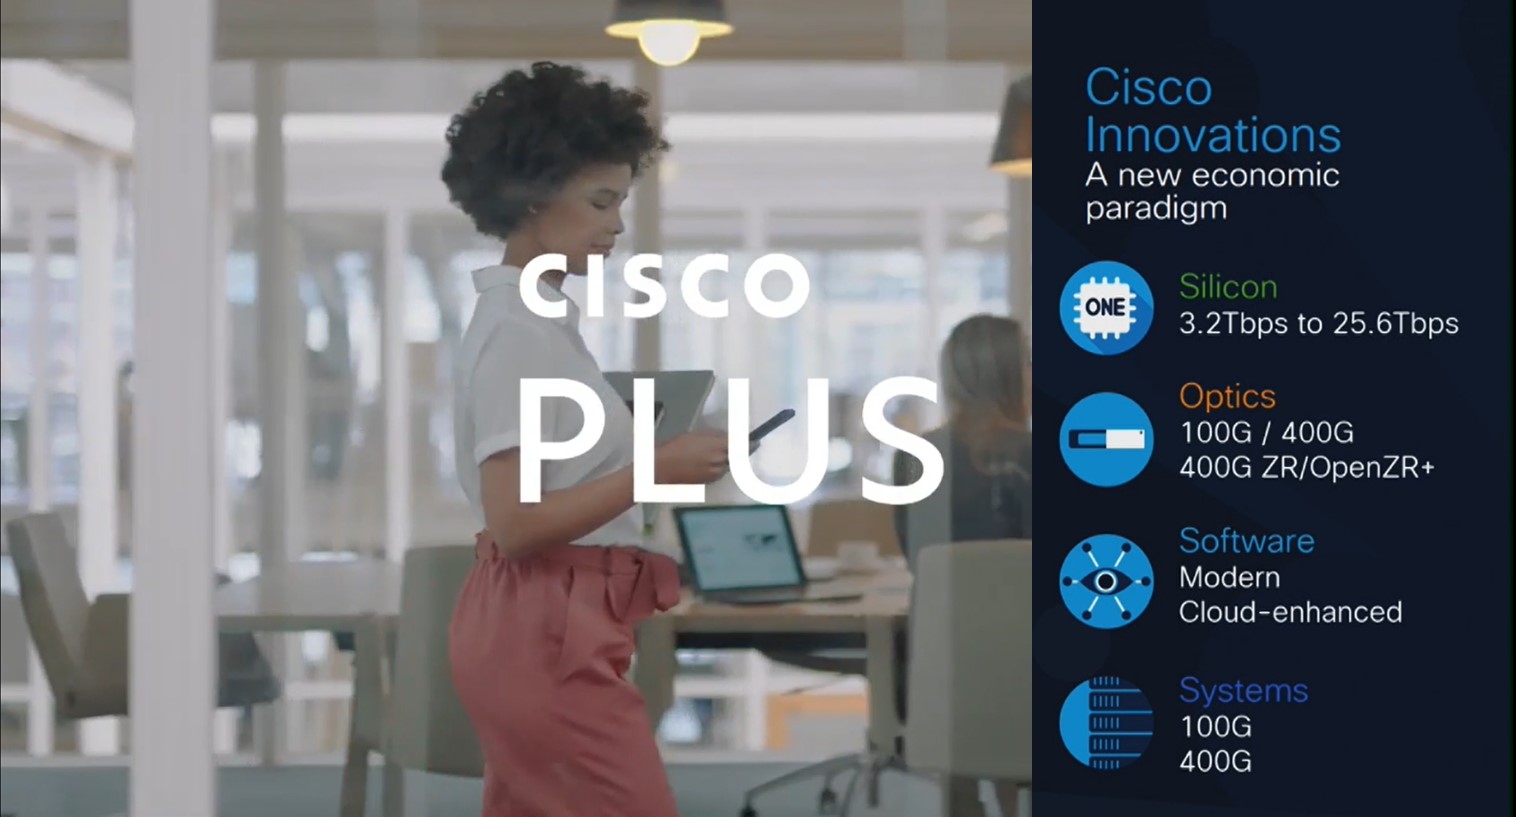 Cisco Live เปิดตัว Cisco Plus พร้อมเชื่อมต่อ 5G  รูปแบบบริการ (Solution-as-a-Service) ที่ยืดหยุ่นและครบวงจร